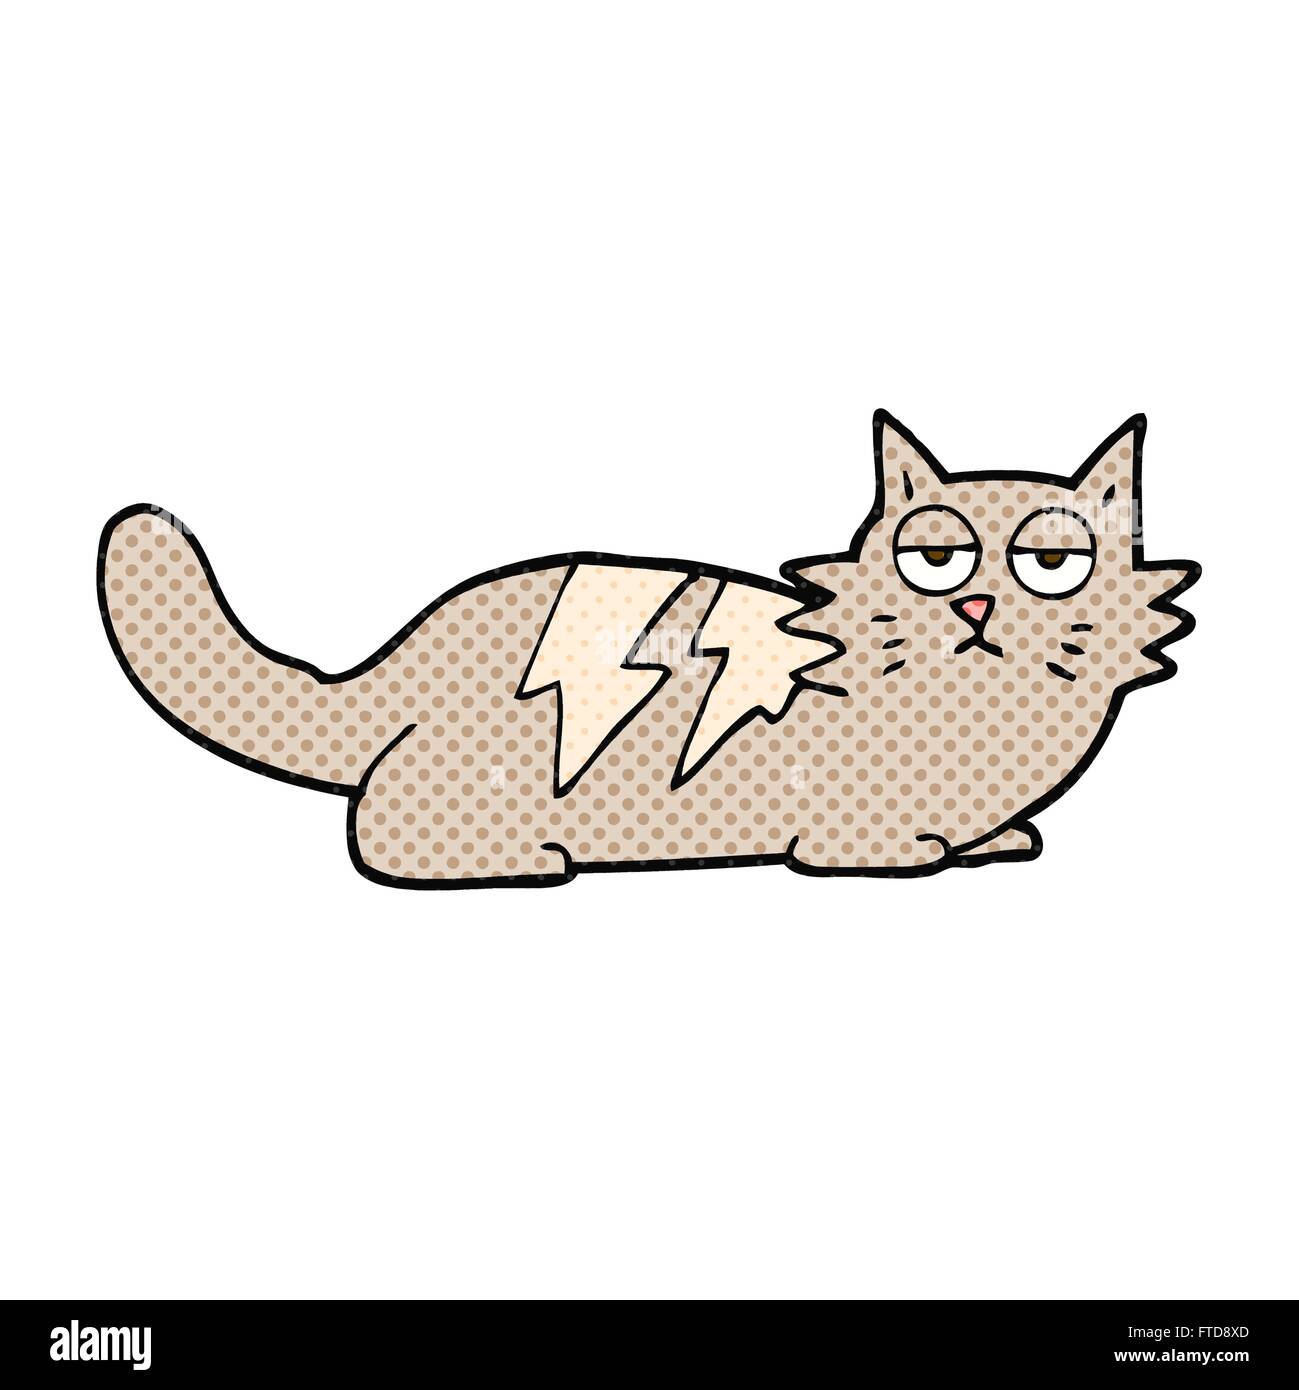 freihändig gezeichnet Comic-Buch-Stil-Cartoon-Katze Stock-Vektorgrafik -  Alamy